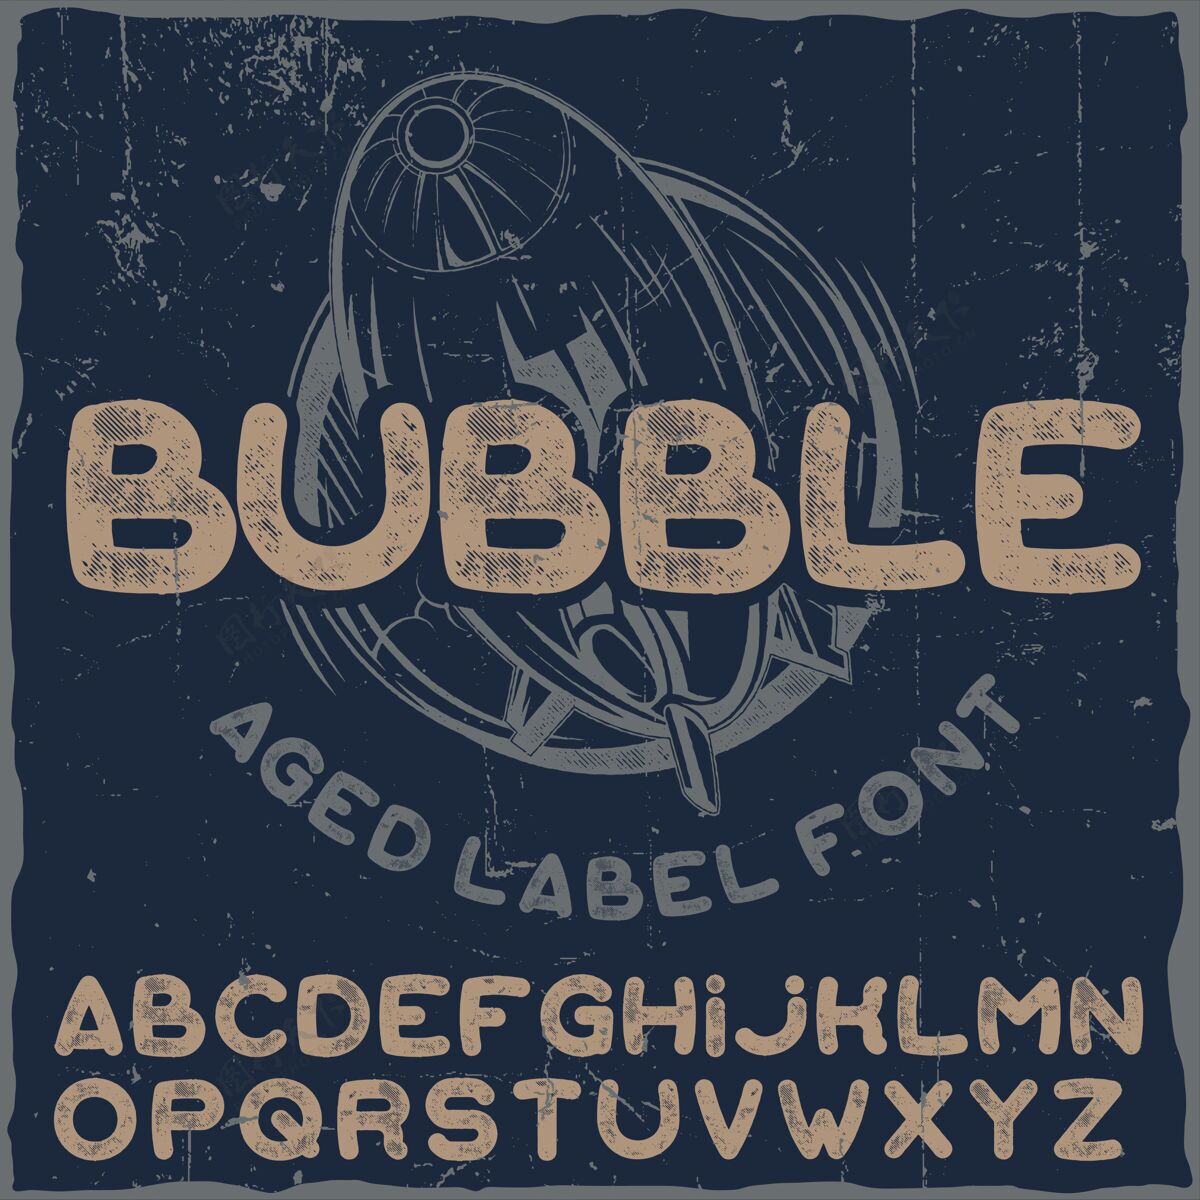 气球有趣的标签字体命名为气泡泡泡书法排版